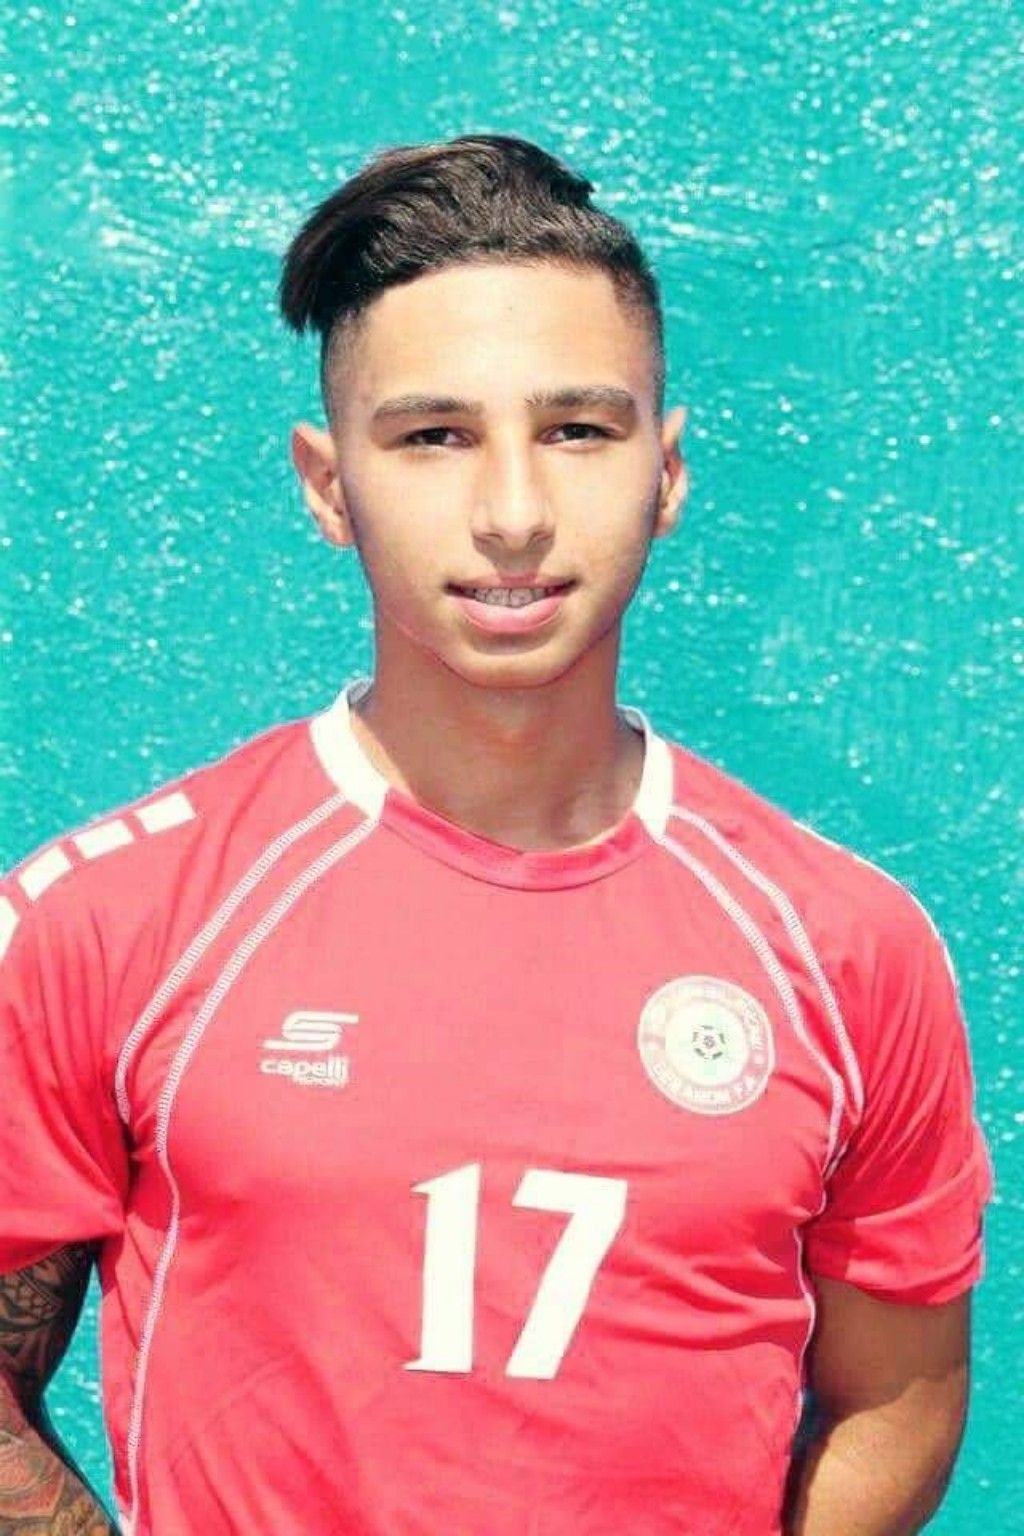 كرة القدم مفجوعة وحزينة هذا اليوم برحيل اللاعب الشاب محمد فحص نتيجة ذبحة قلبية مفاجئة 